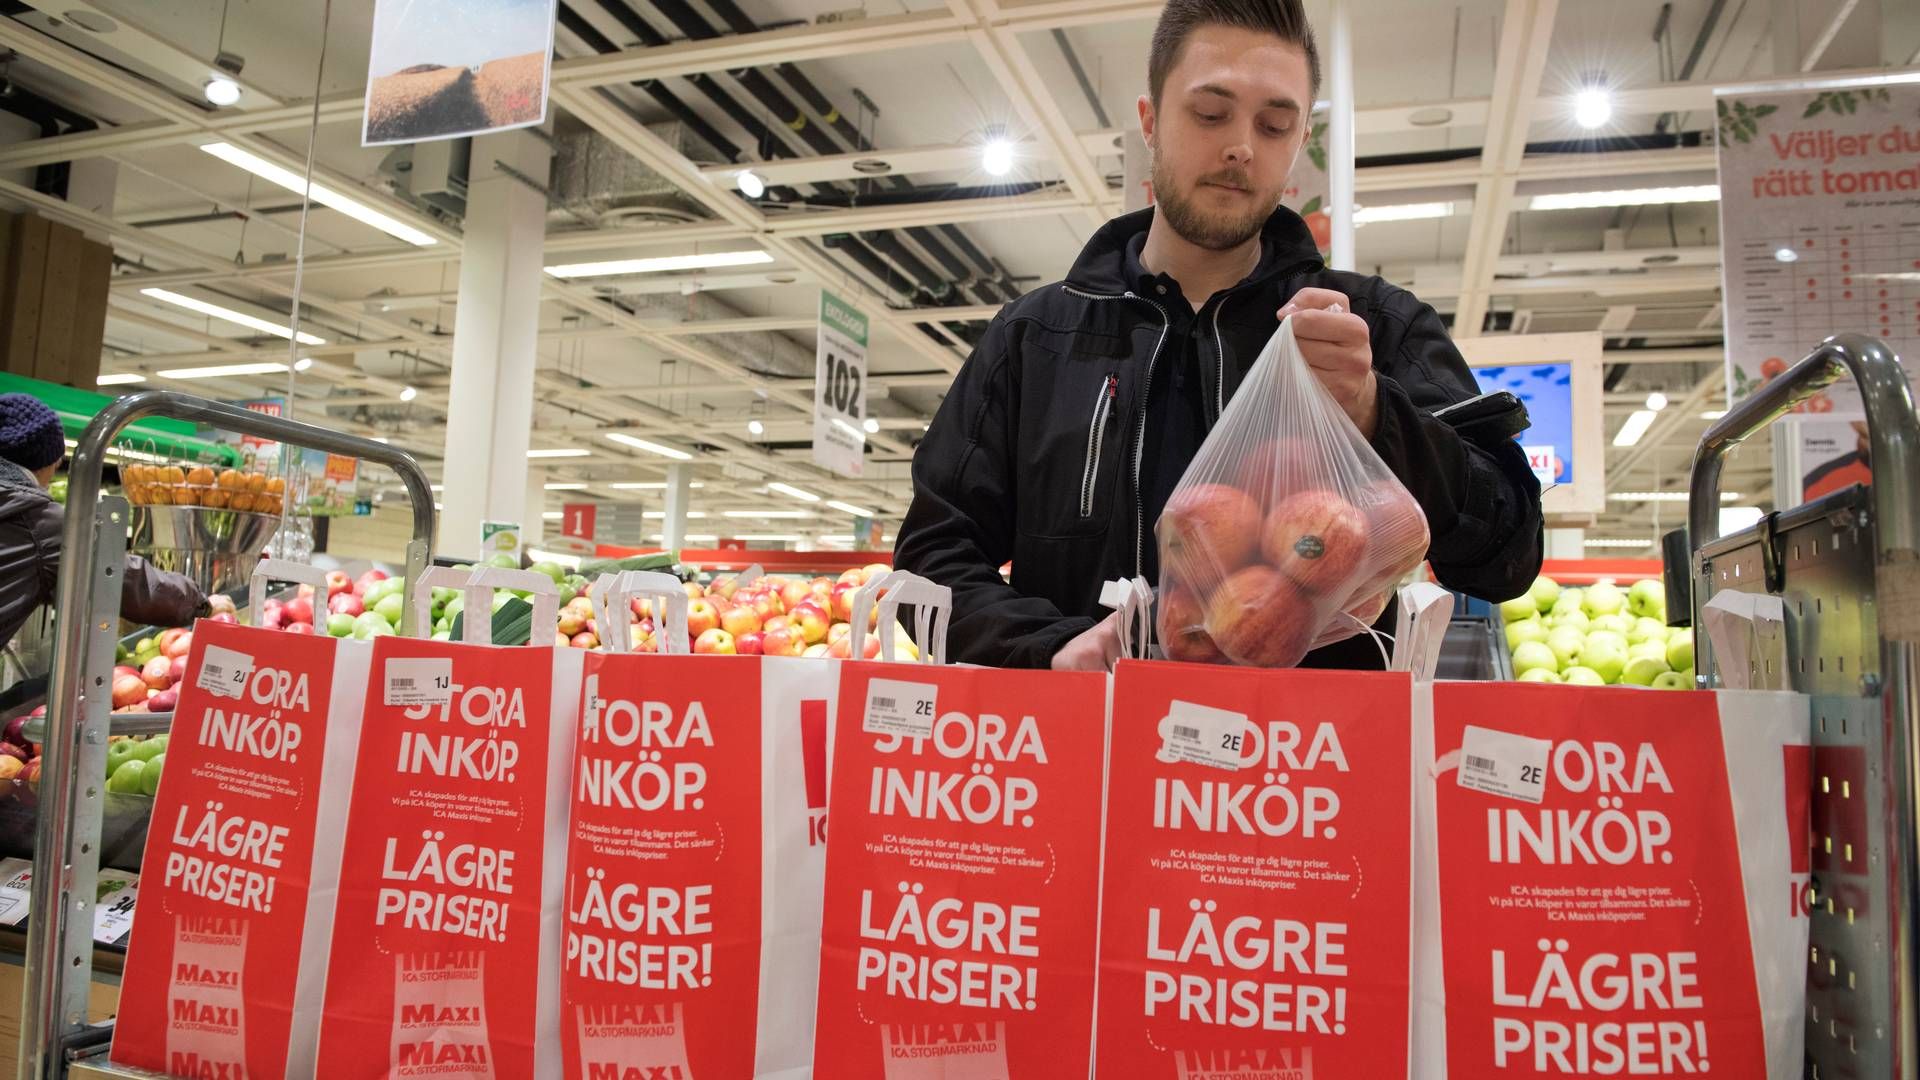 Dalende forbrug er en af grundene til, at Sveriges økonomi nu er i recession. | Foto: Pr/jessica Gow/tt